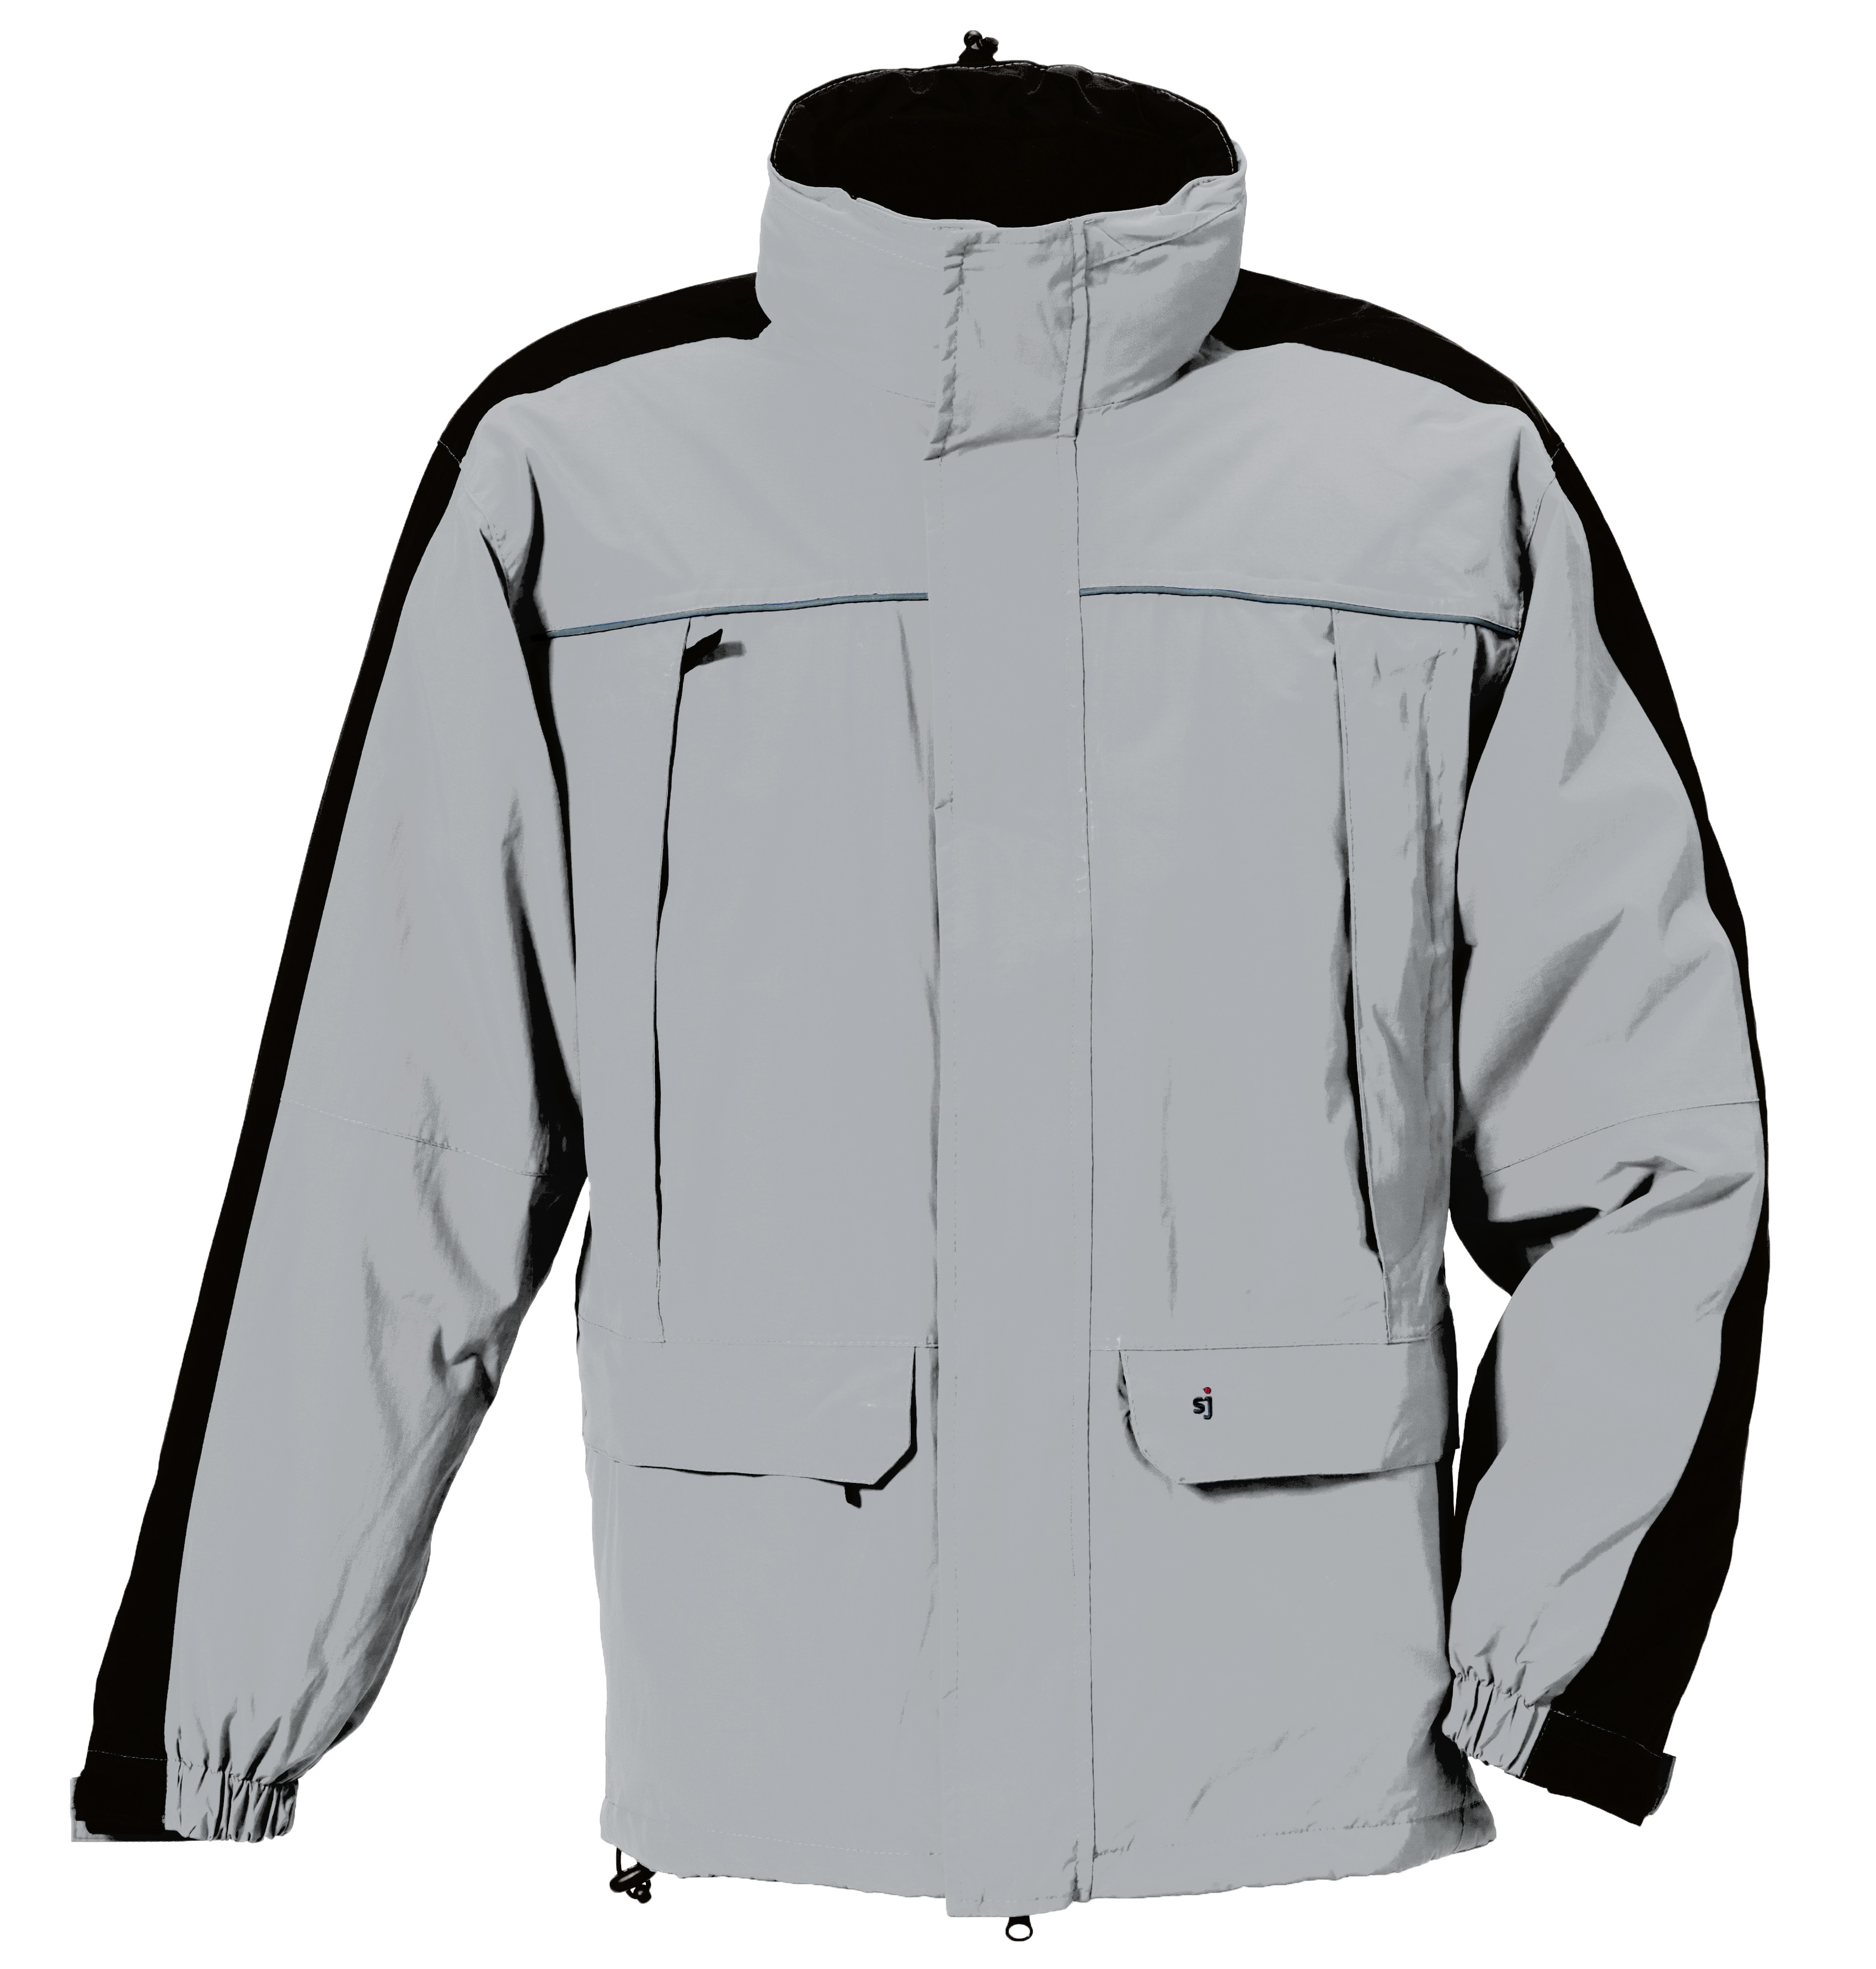 ROFA-Kälteschutz, Funktions-Wetter- und Winter-Arbeits-Berufs-Jacke, grau-schwarz
